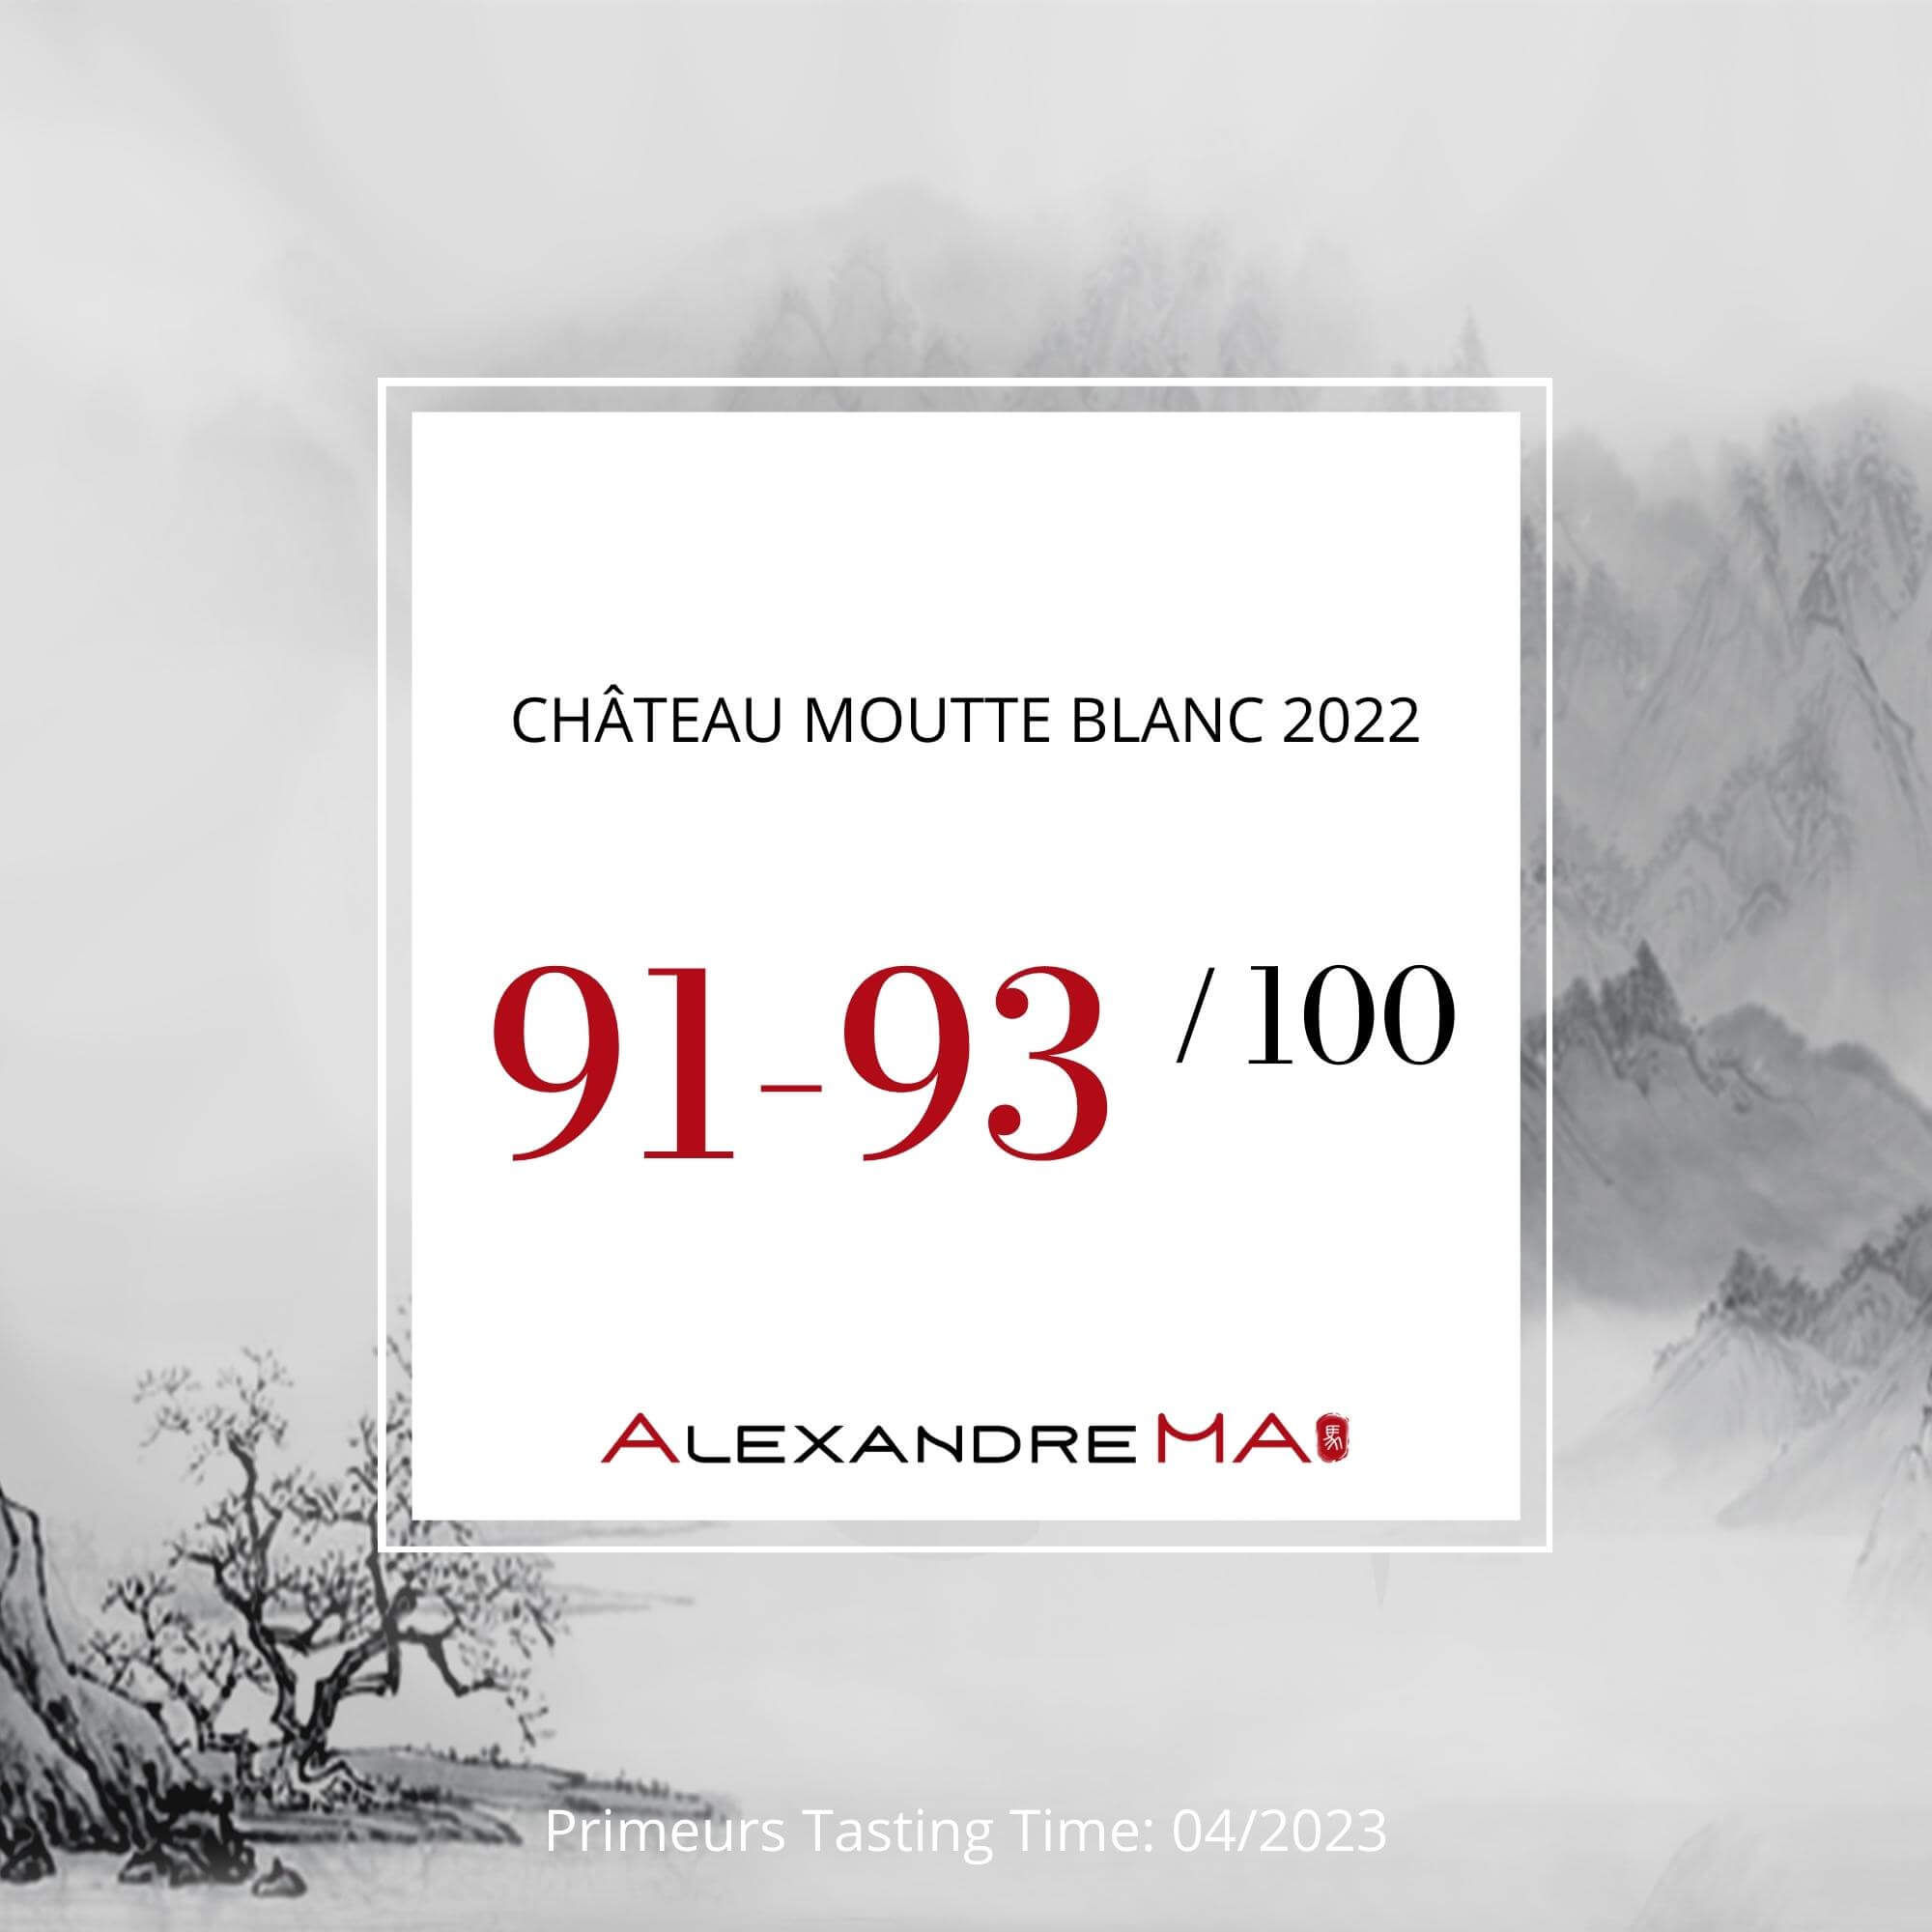 Château Moutte Blanc 2022 Primeurs - Alexandre MA